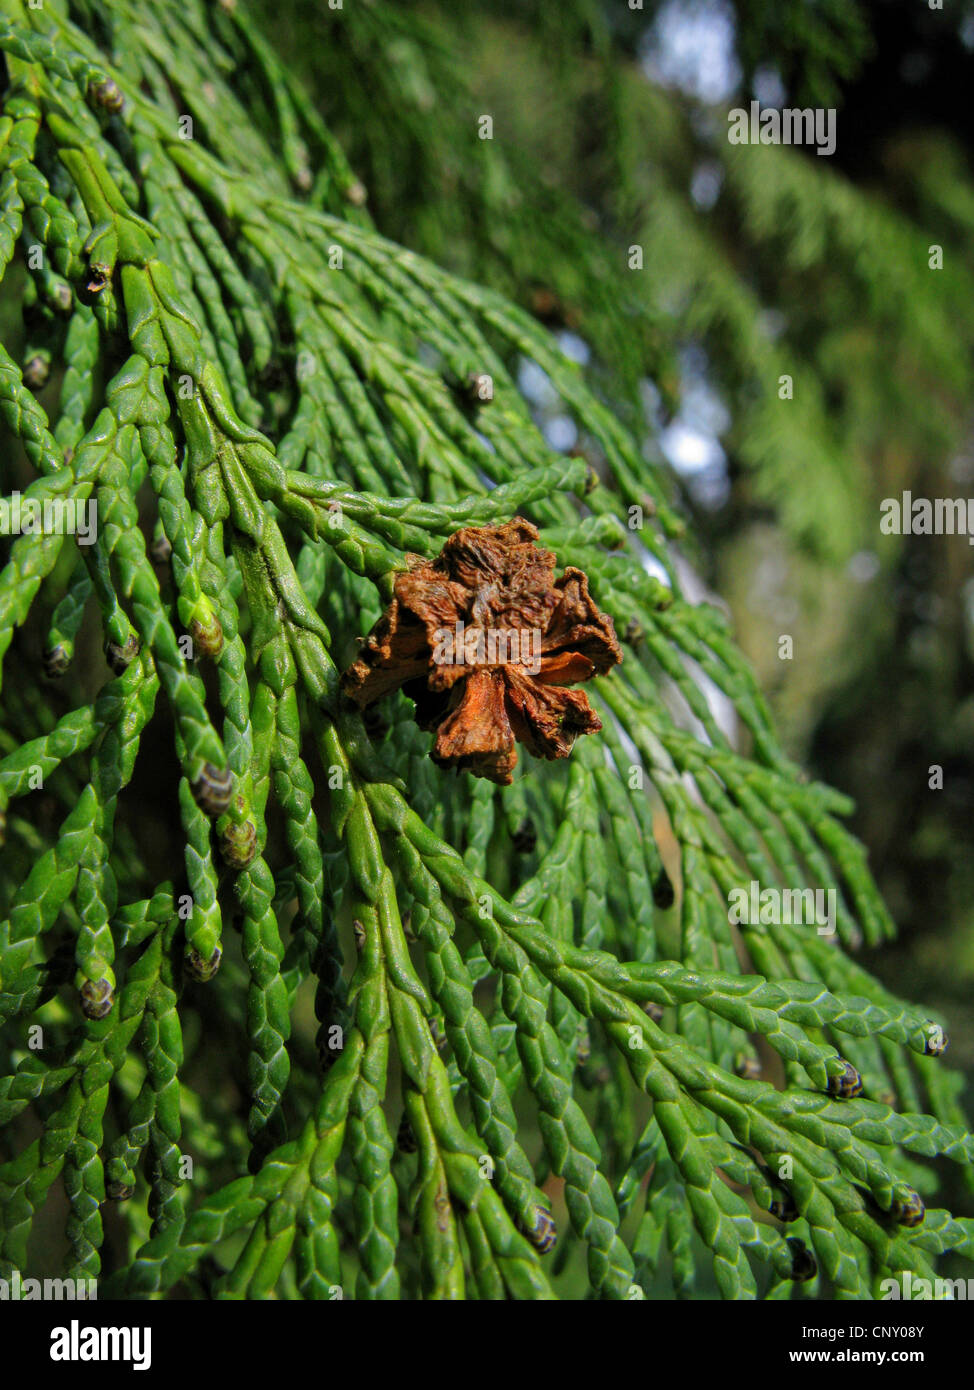 Lawson cypress, Port Orford cedar (Chamaecyparis lawsoniana), cone on a branch Stock Photo